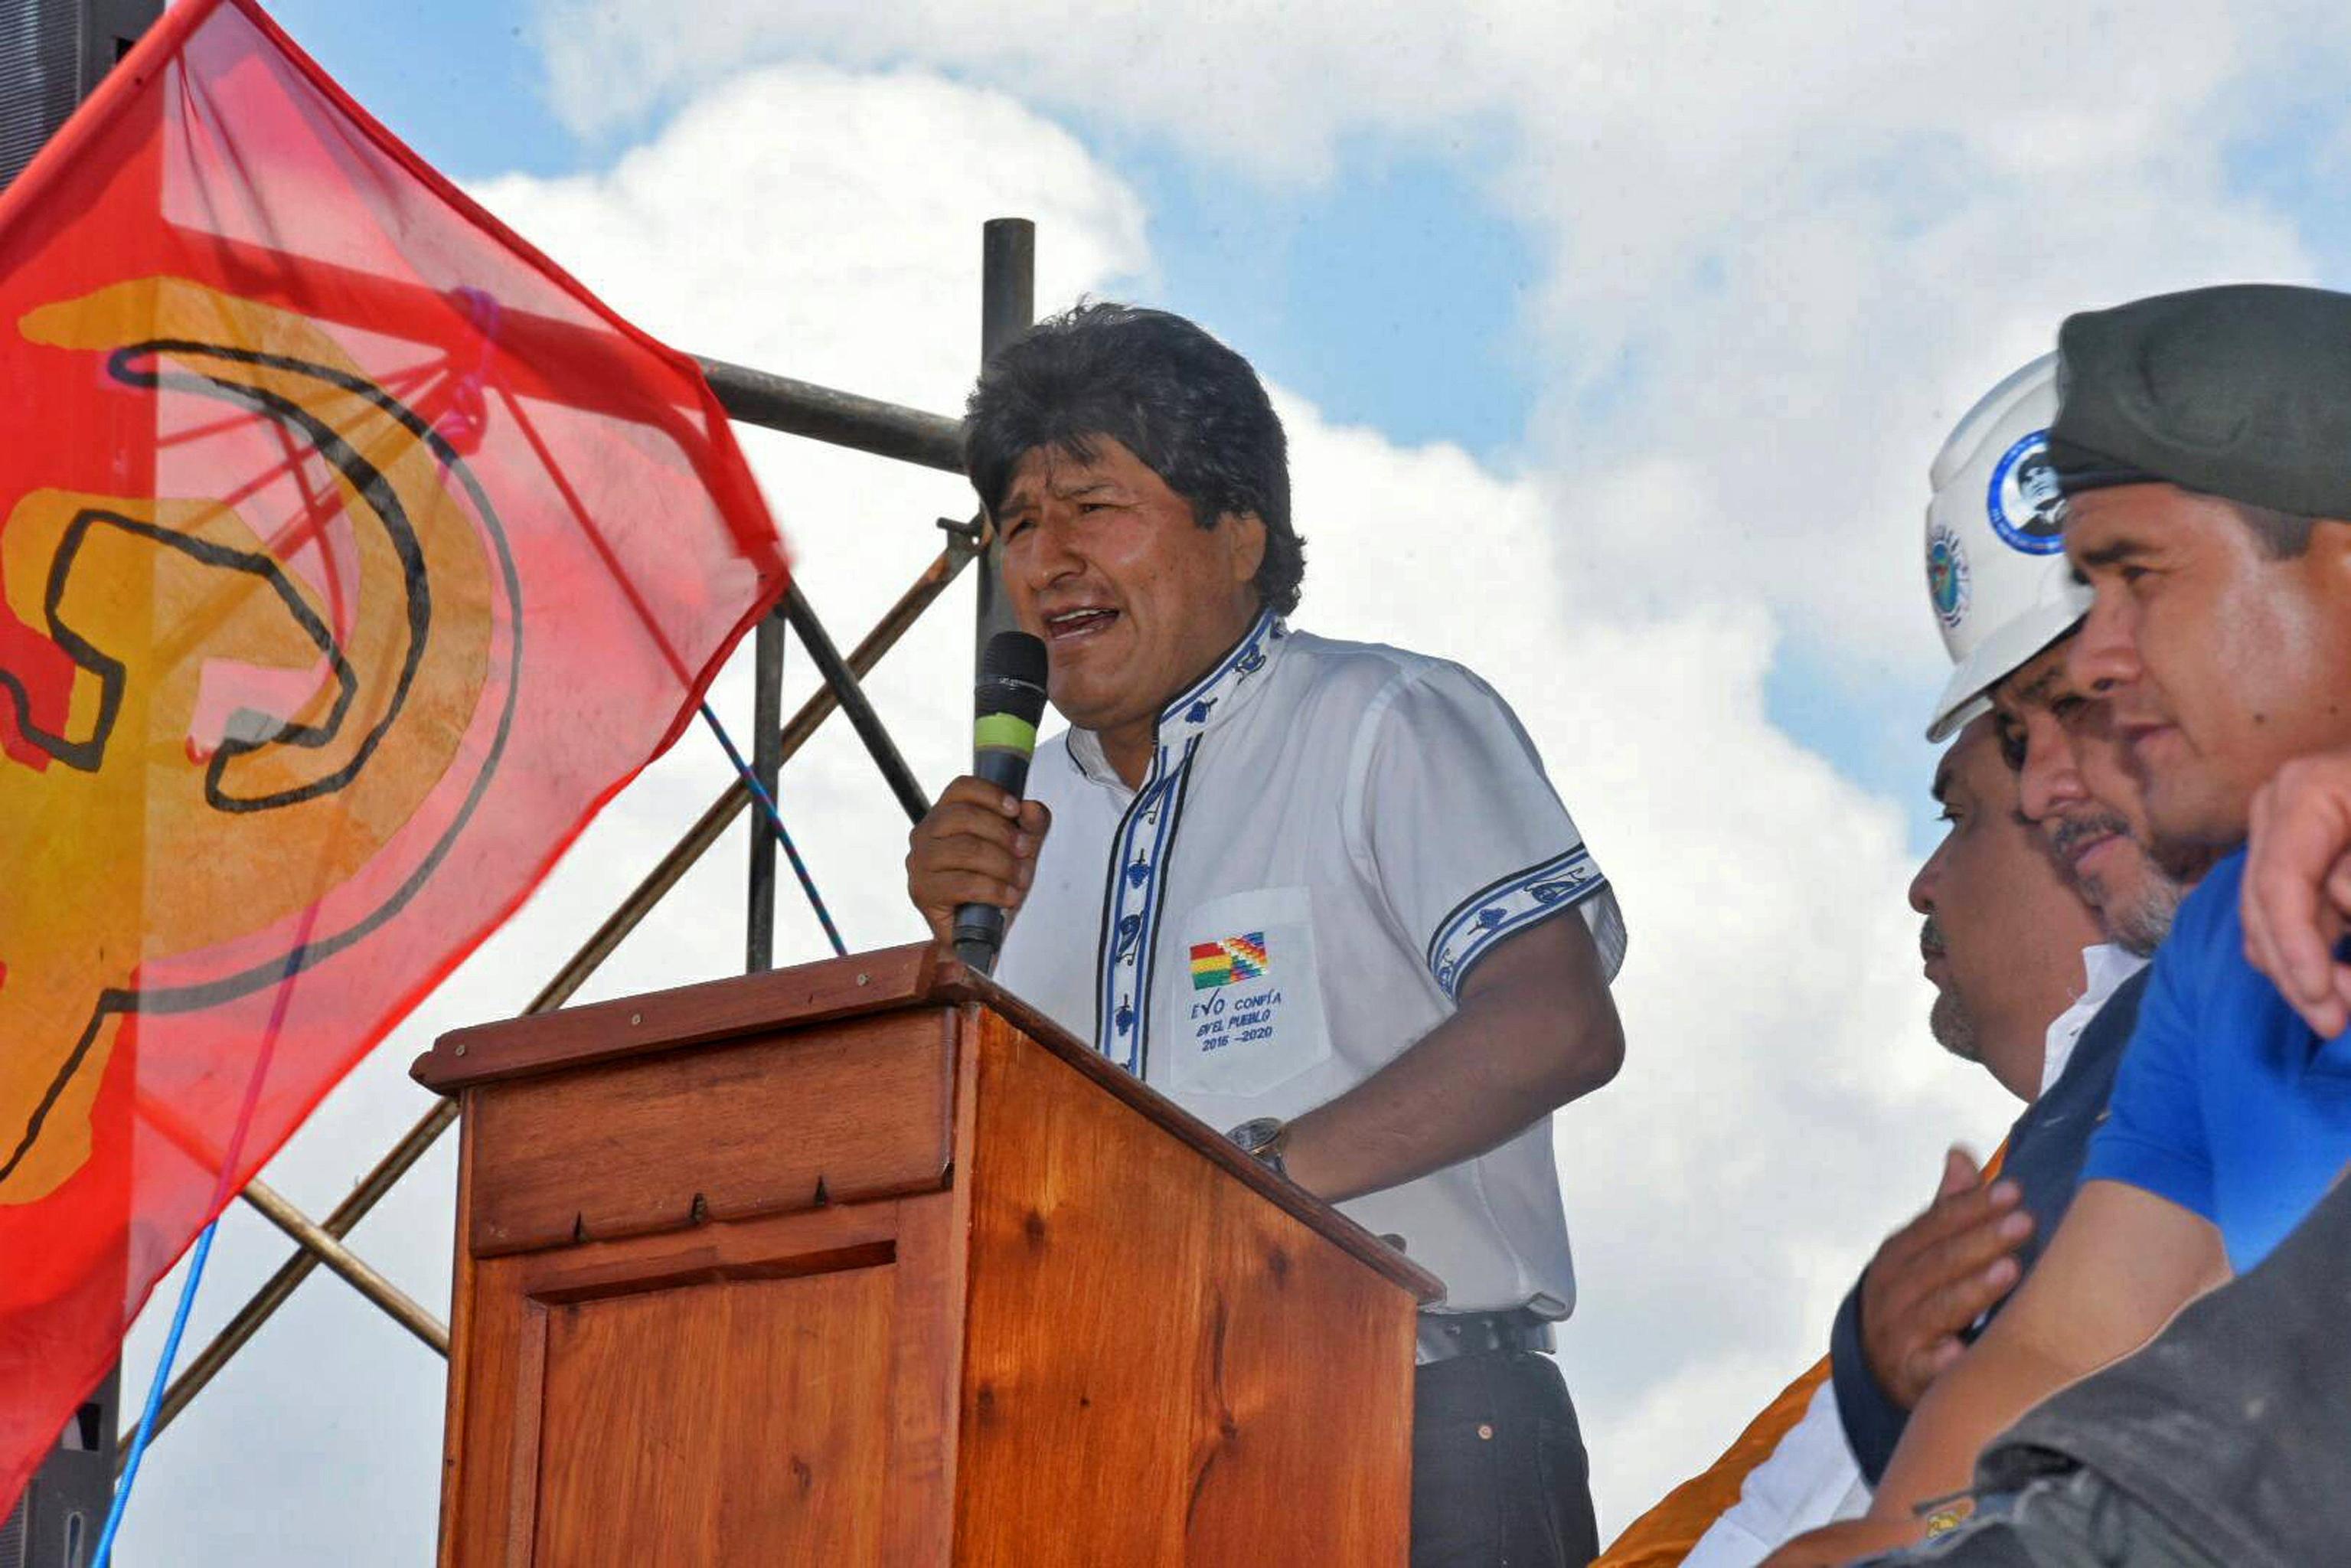 Il presidente Evo Morales, contro cui è indirizzata la protesta